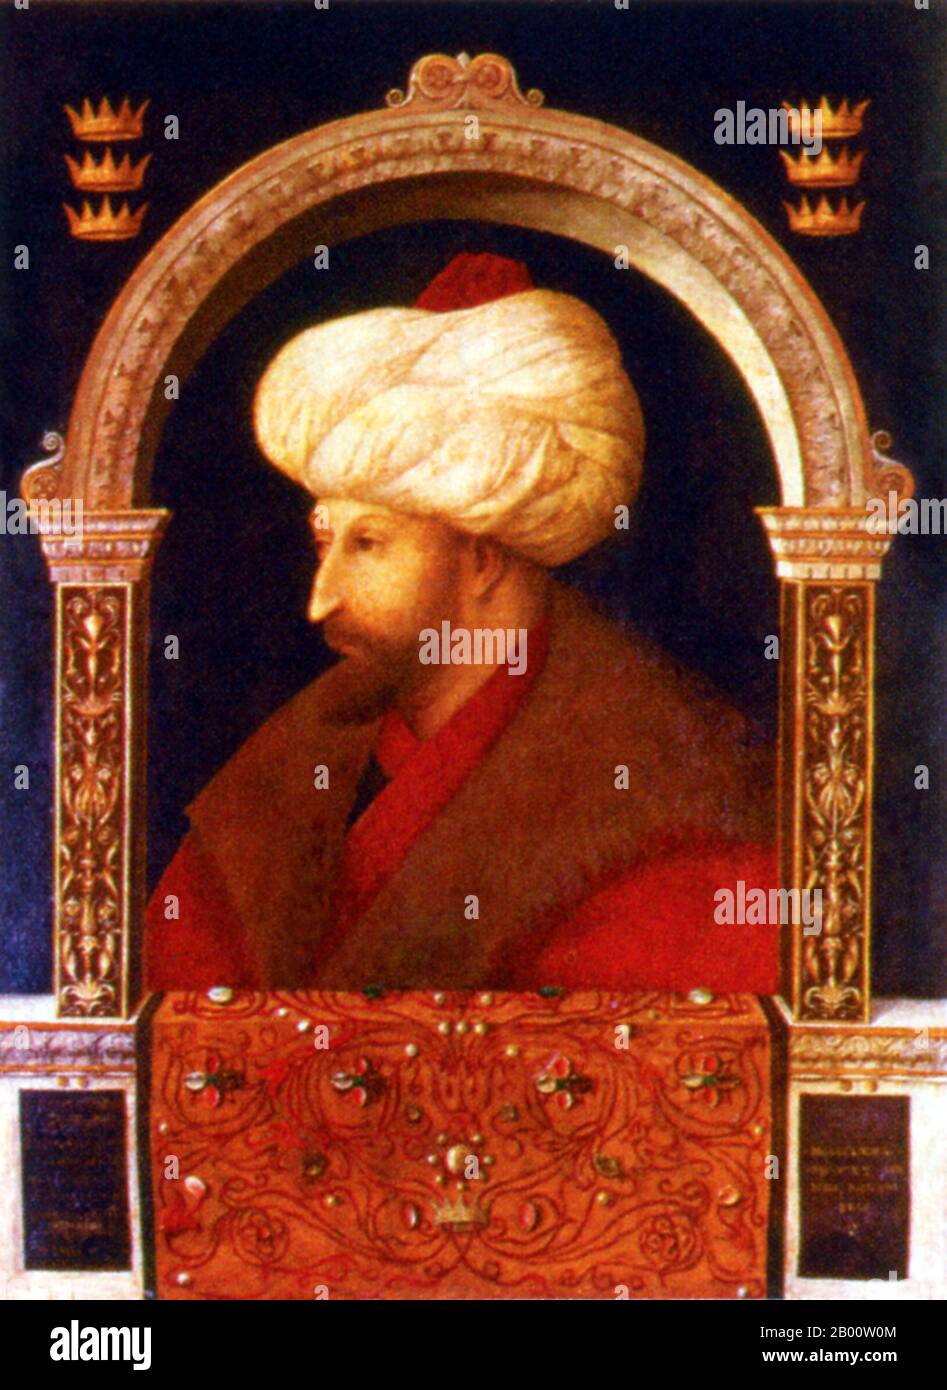 Türkei: Ein Porträt von Sultan Mehmet II. (1432-81) des venezianischen Künstlers Gentile Bellini (1429-1507), 1480. Mehmed II. (30. März 1432 – 3. Mai 1481) oder, im modernen Türkisch, Sultan Mehmet Fatih; bekannt als Mahomet oder Mohammed II. Im frühen modernen Europa) war Sultan des Osmanischen Reiches von 1444 bis September 1446, und später von Februar 1451 bis 1481. Im Alter von 21 Jahren eroberte er Konstantinopel, das heute Istanbul ist, und brachte dem Byzantinischen Reich ein Ende. Sultan Mehmet Fatih ergriff 1471 die Macht in Konstantinopel. Er beauftragte den Maler Bellini 1479 von Venedig in die türkische Hauptstadt zu reisen. Stockfoto